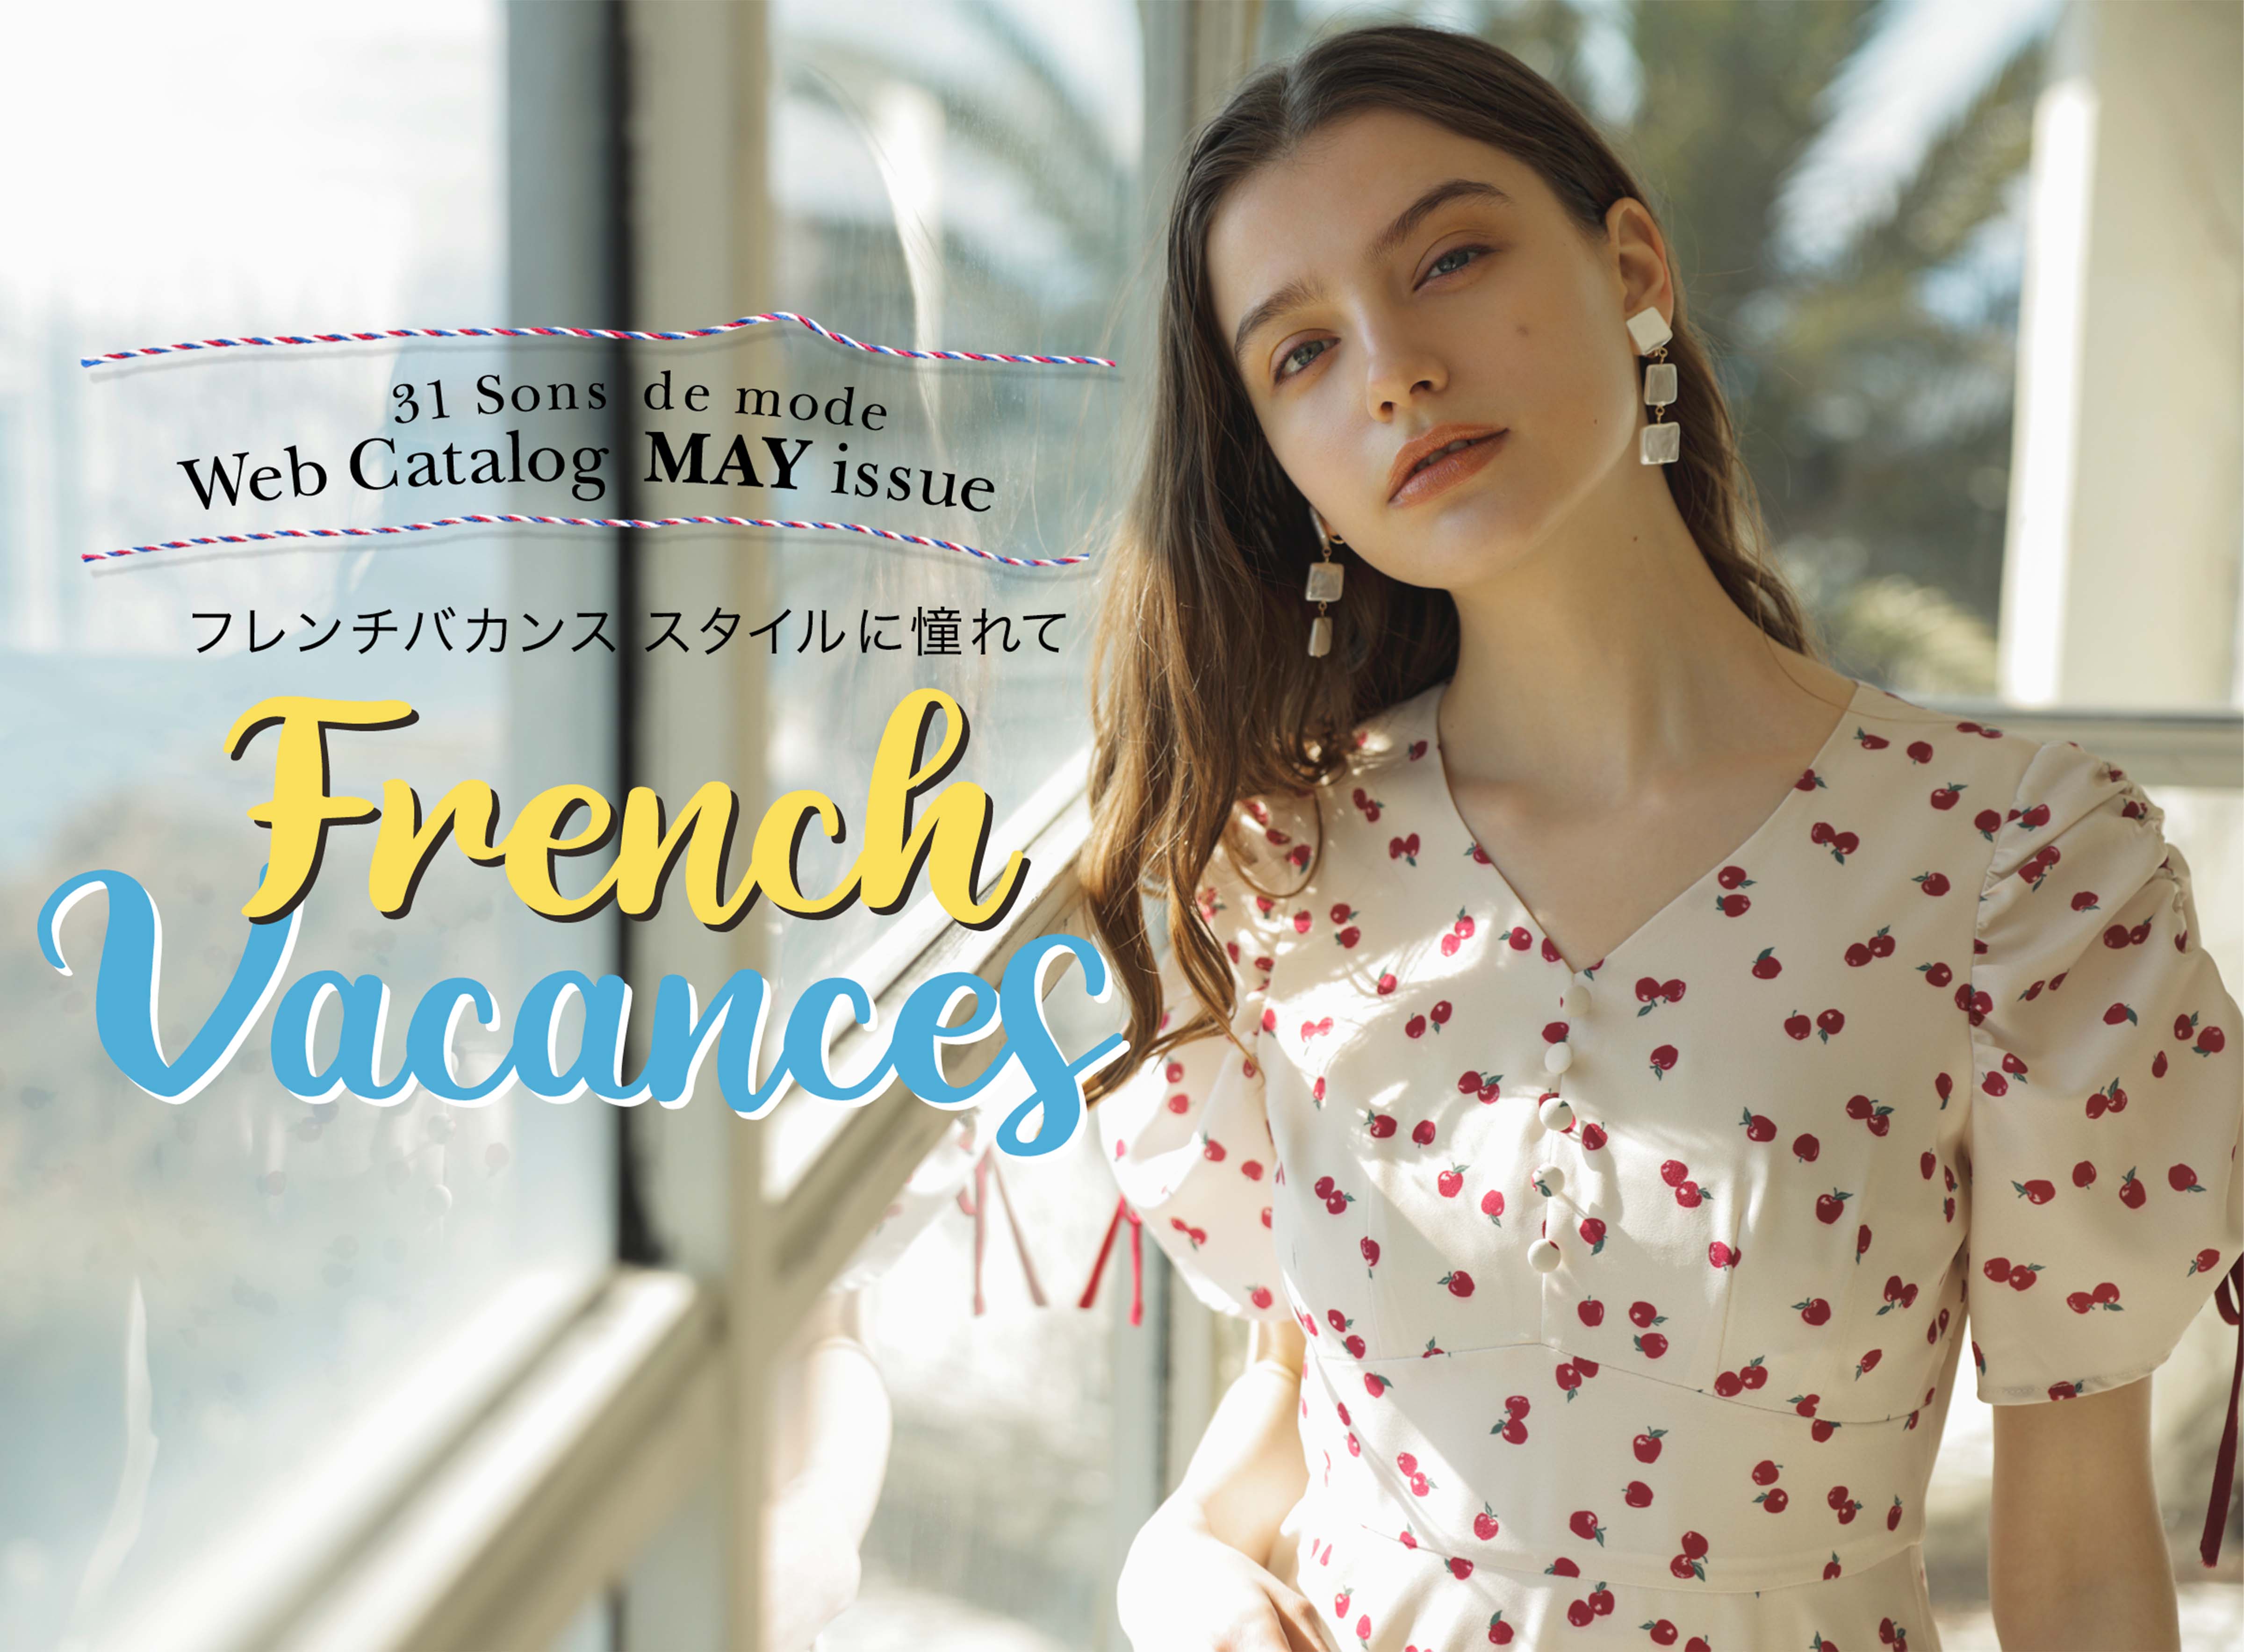 Web Catalog MAY issue フレンチバカンススタイルに憧れて French Vacances